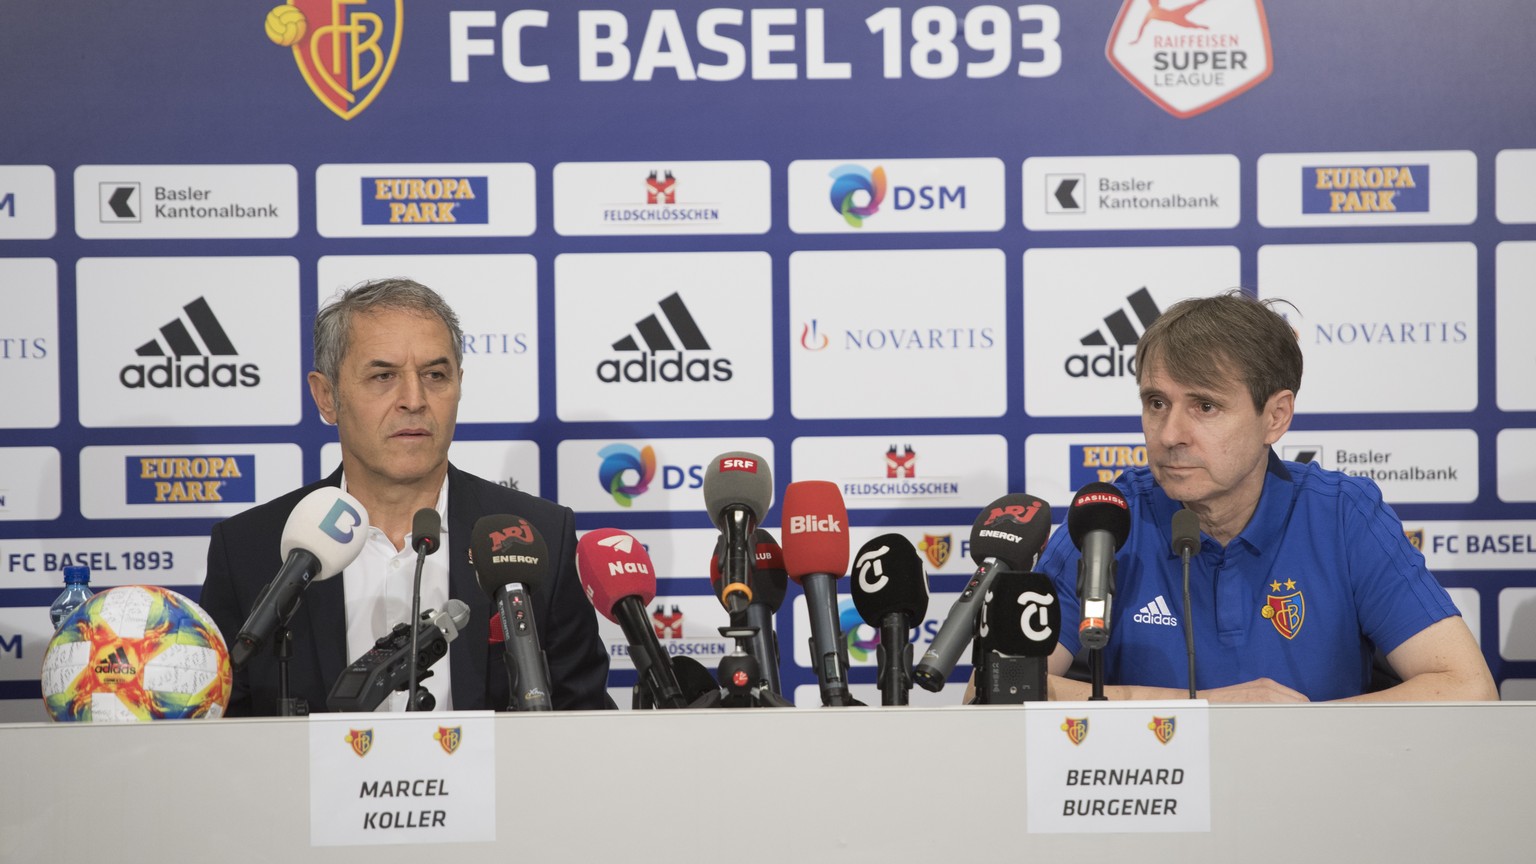 Praesident Bernhard Burgener, rechts, und Cheftrainer Marcel Koller, links, sprechen an einer Medienkonferenz des FC Basel 1893 in Basel am Dienstag, 18. Juni 2019. (KEYSTONE/Georgios Kefalas)